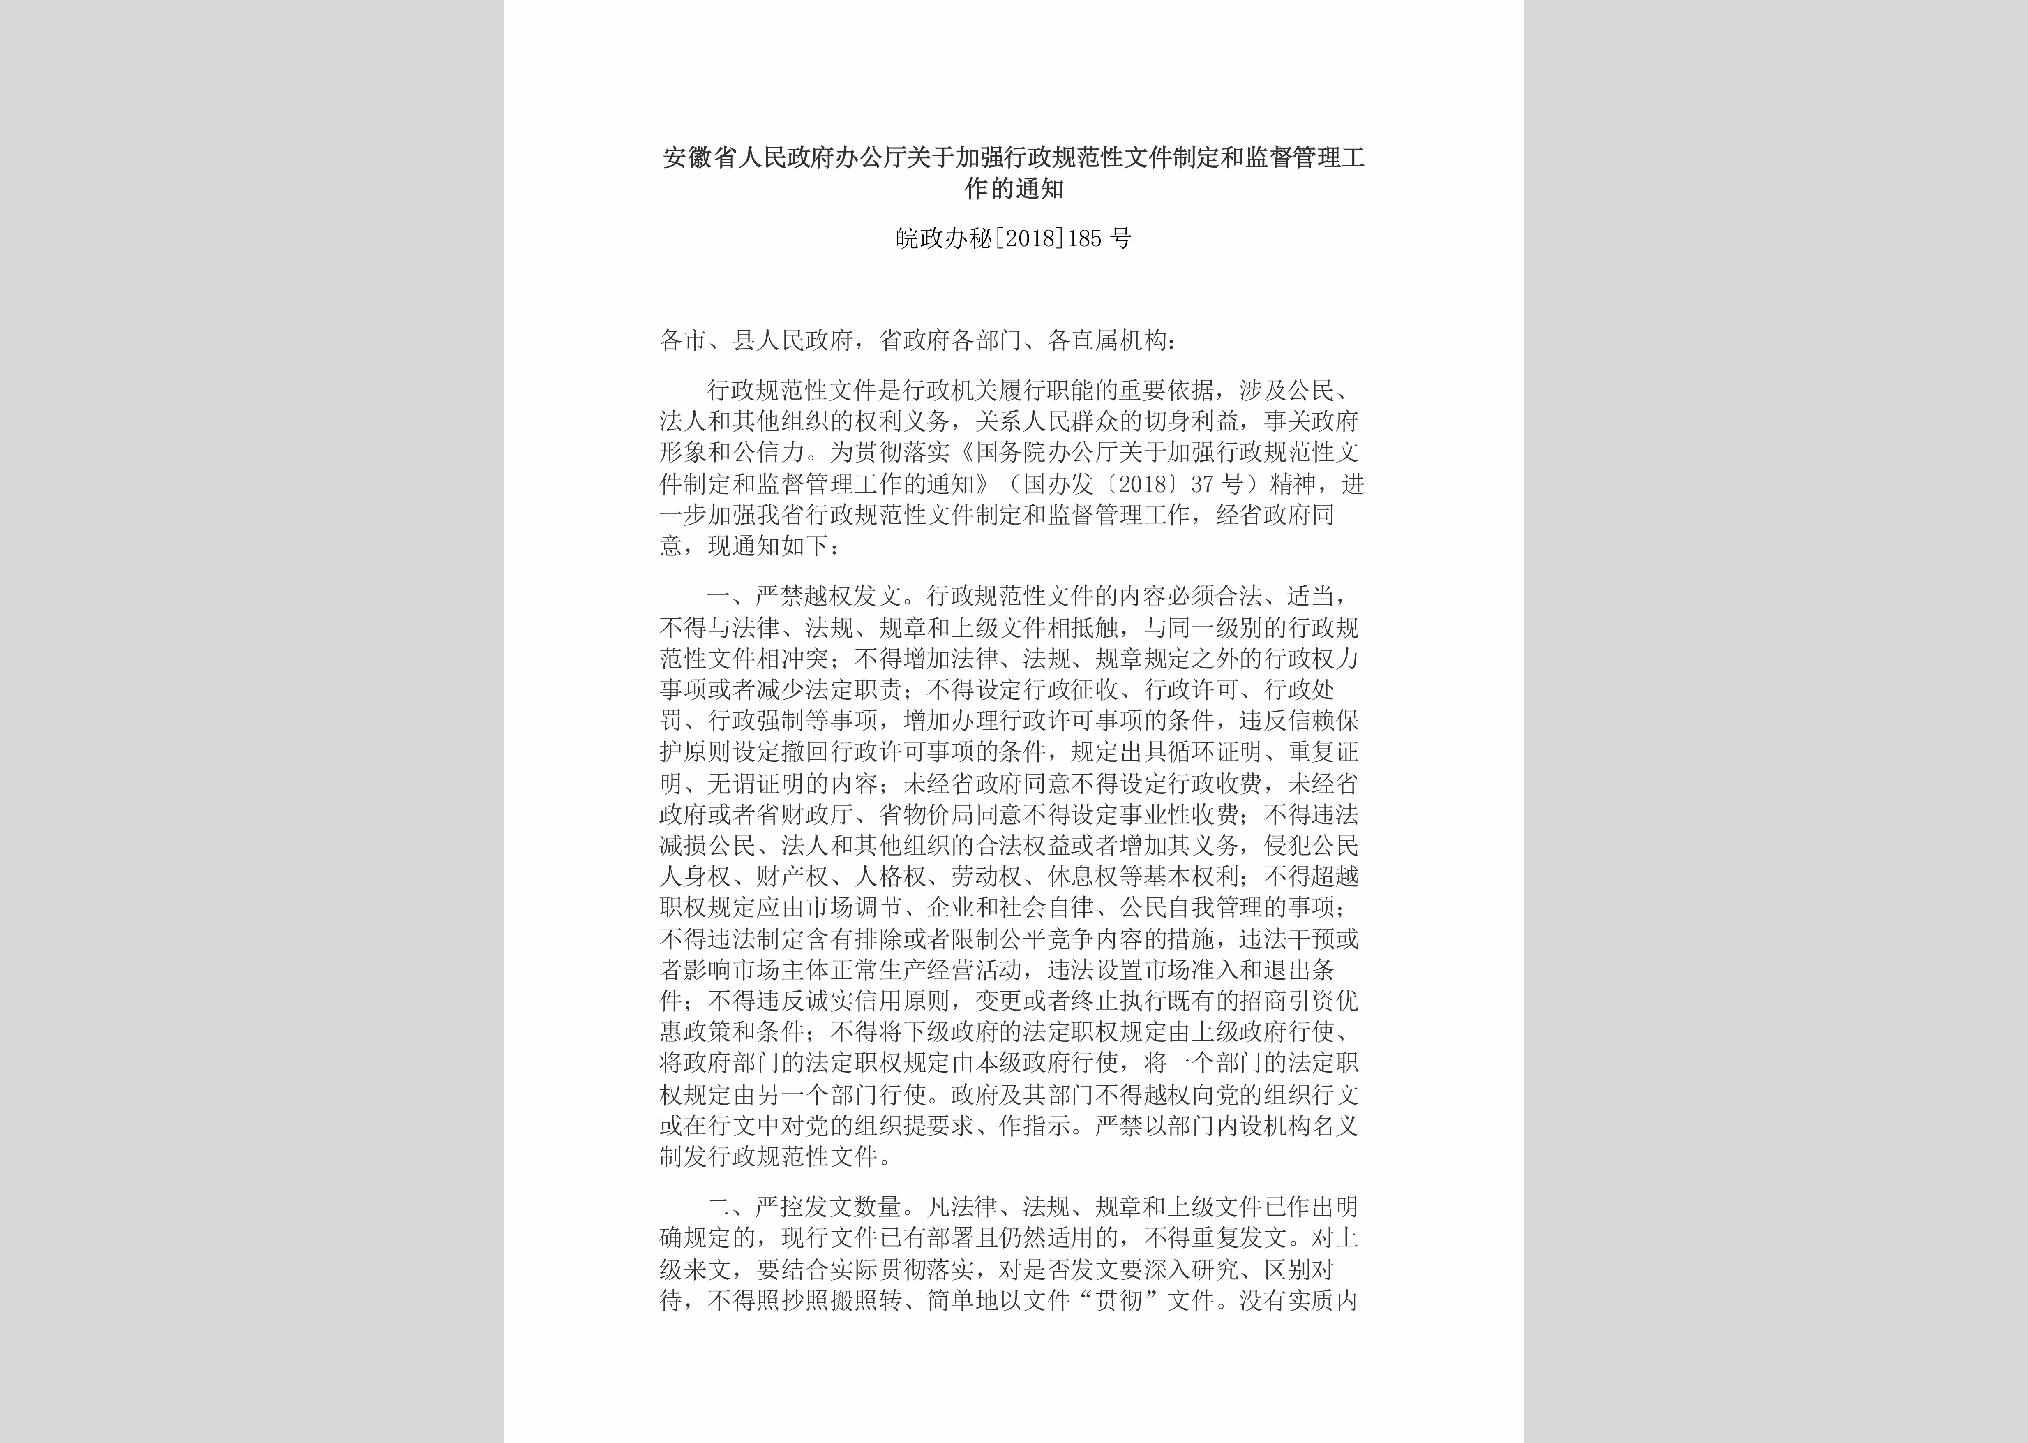 皖政办秘[2018]185号：安徽省人民政府办公厅关于加强行政规范性文件制定和监督管理工作的通知